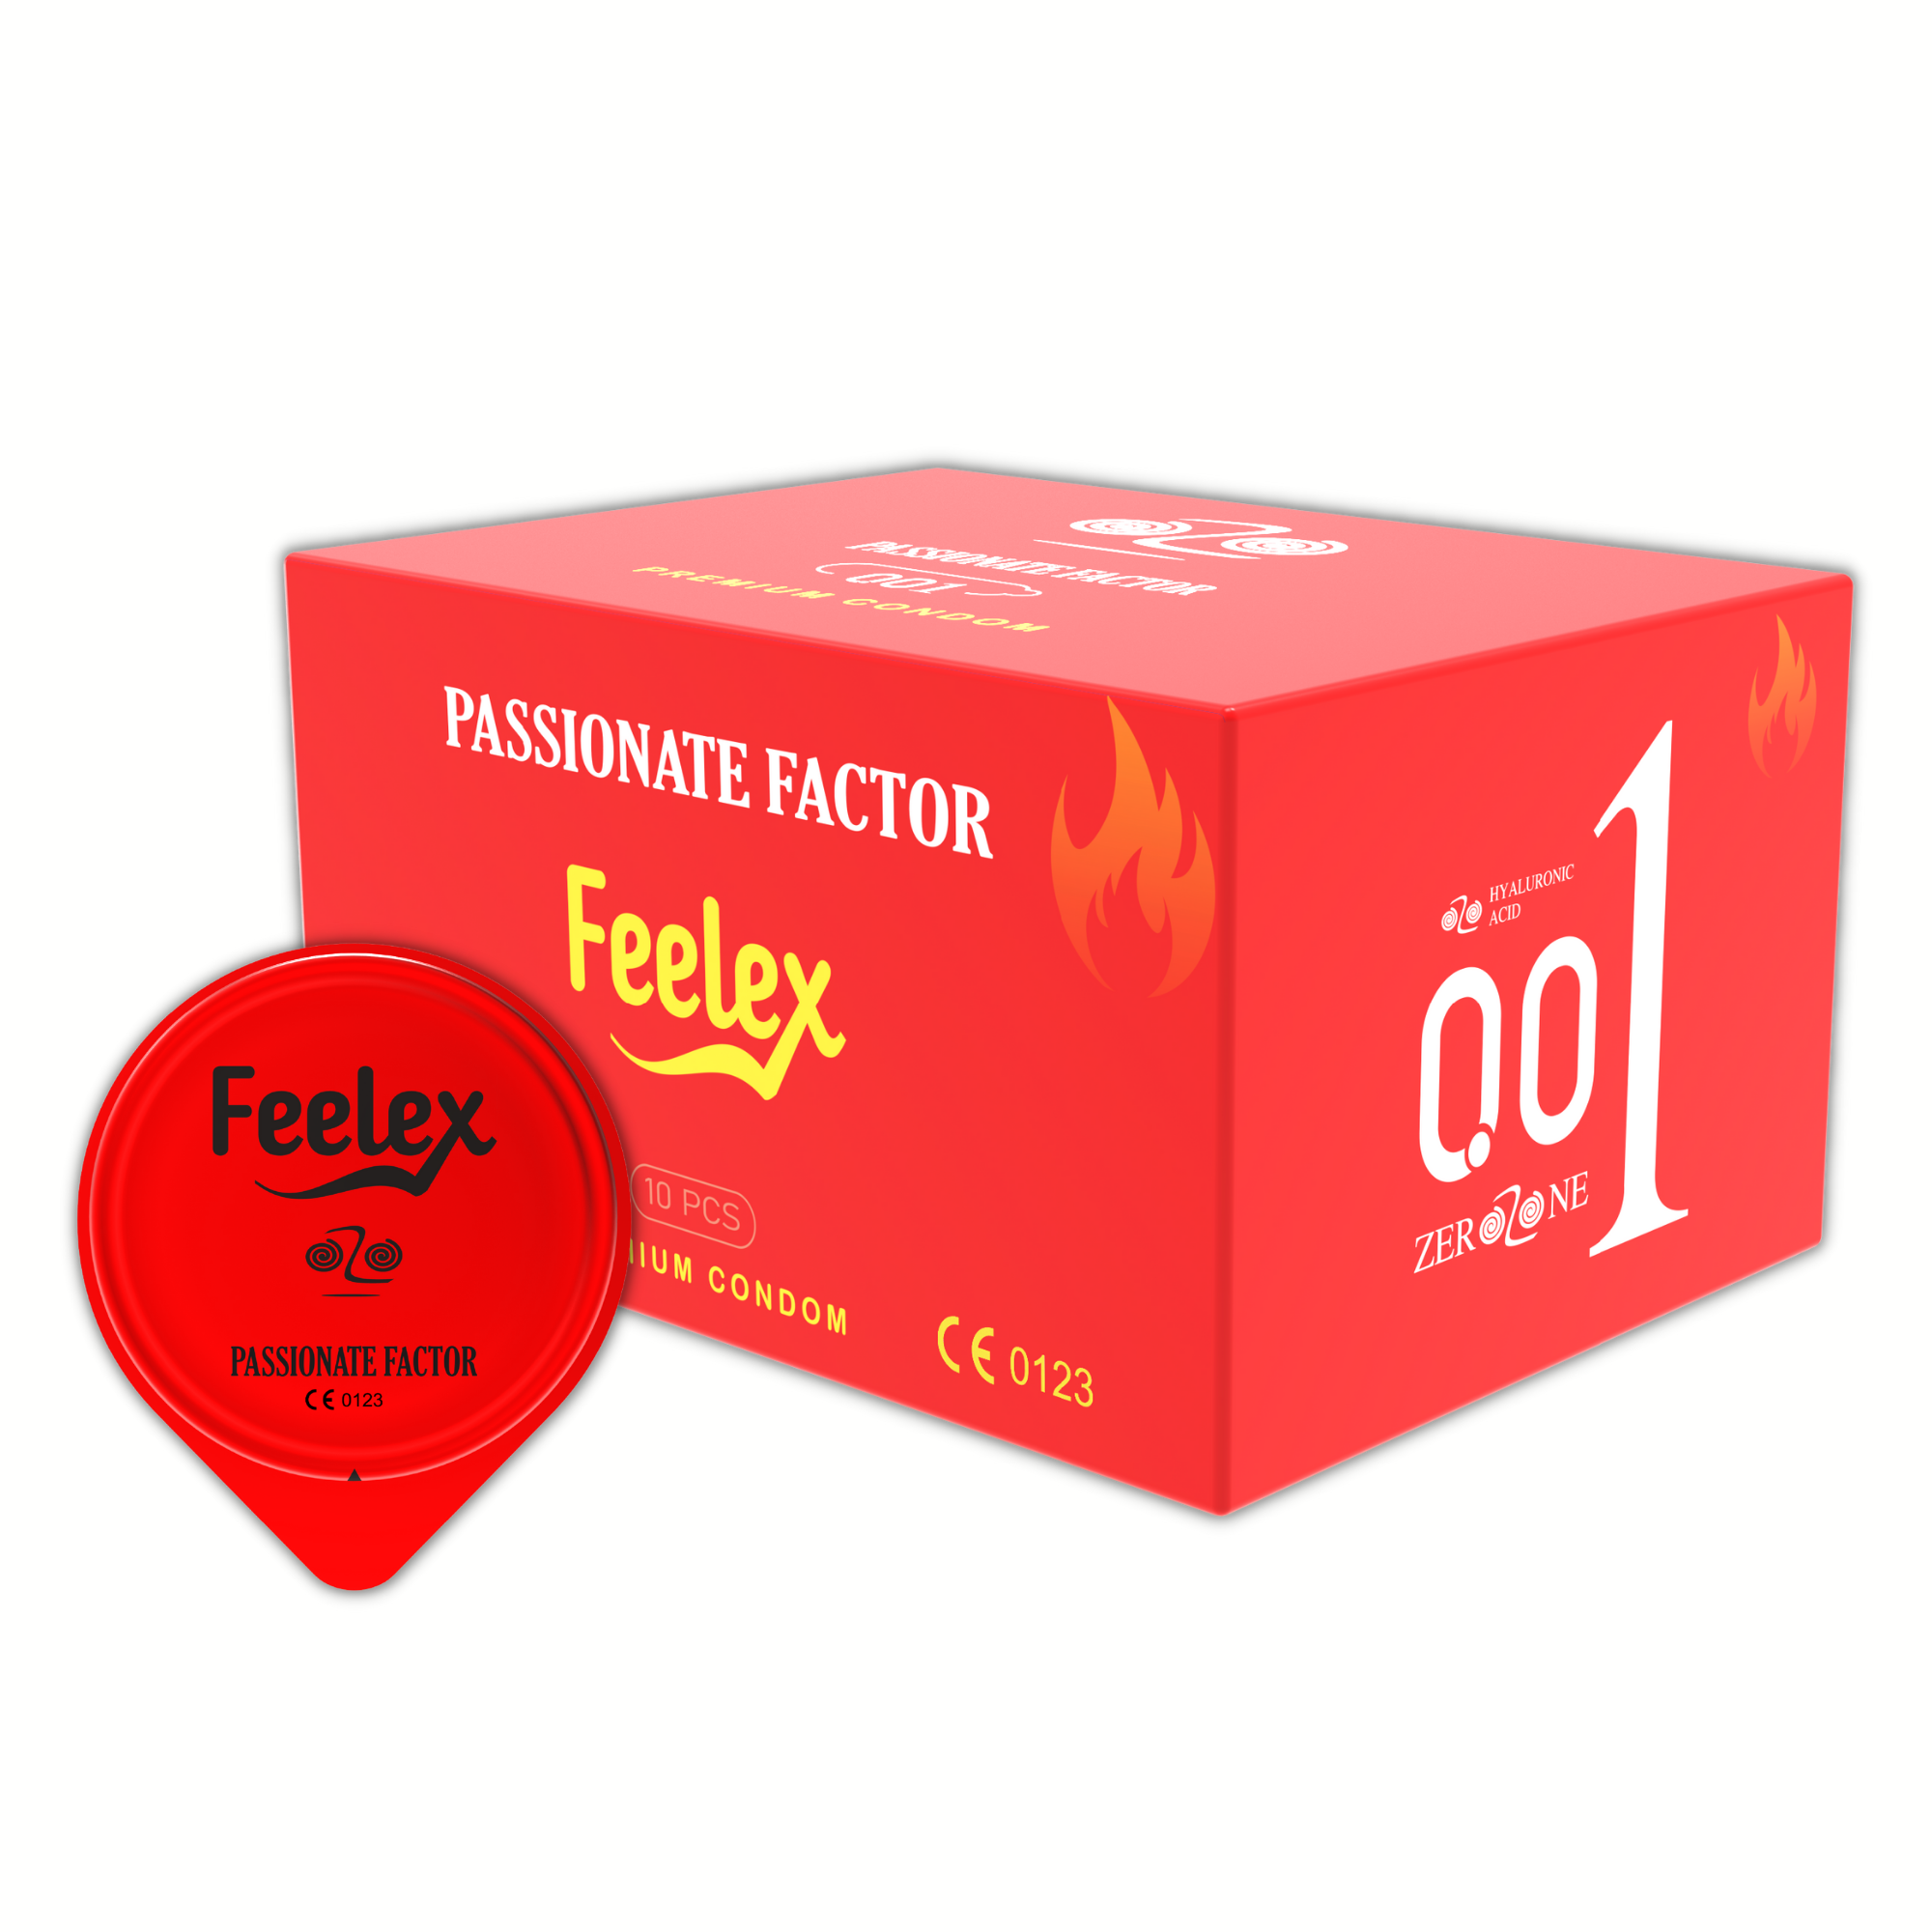 Bao cao su Feelex Passionate Factor siêu mỏng, tính năng truyền nhiệt độc đáo, cảm giác chân thực